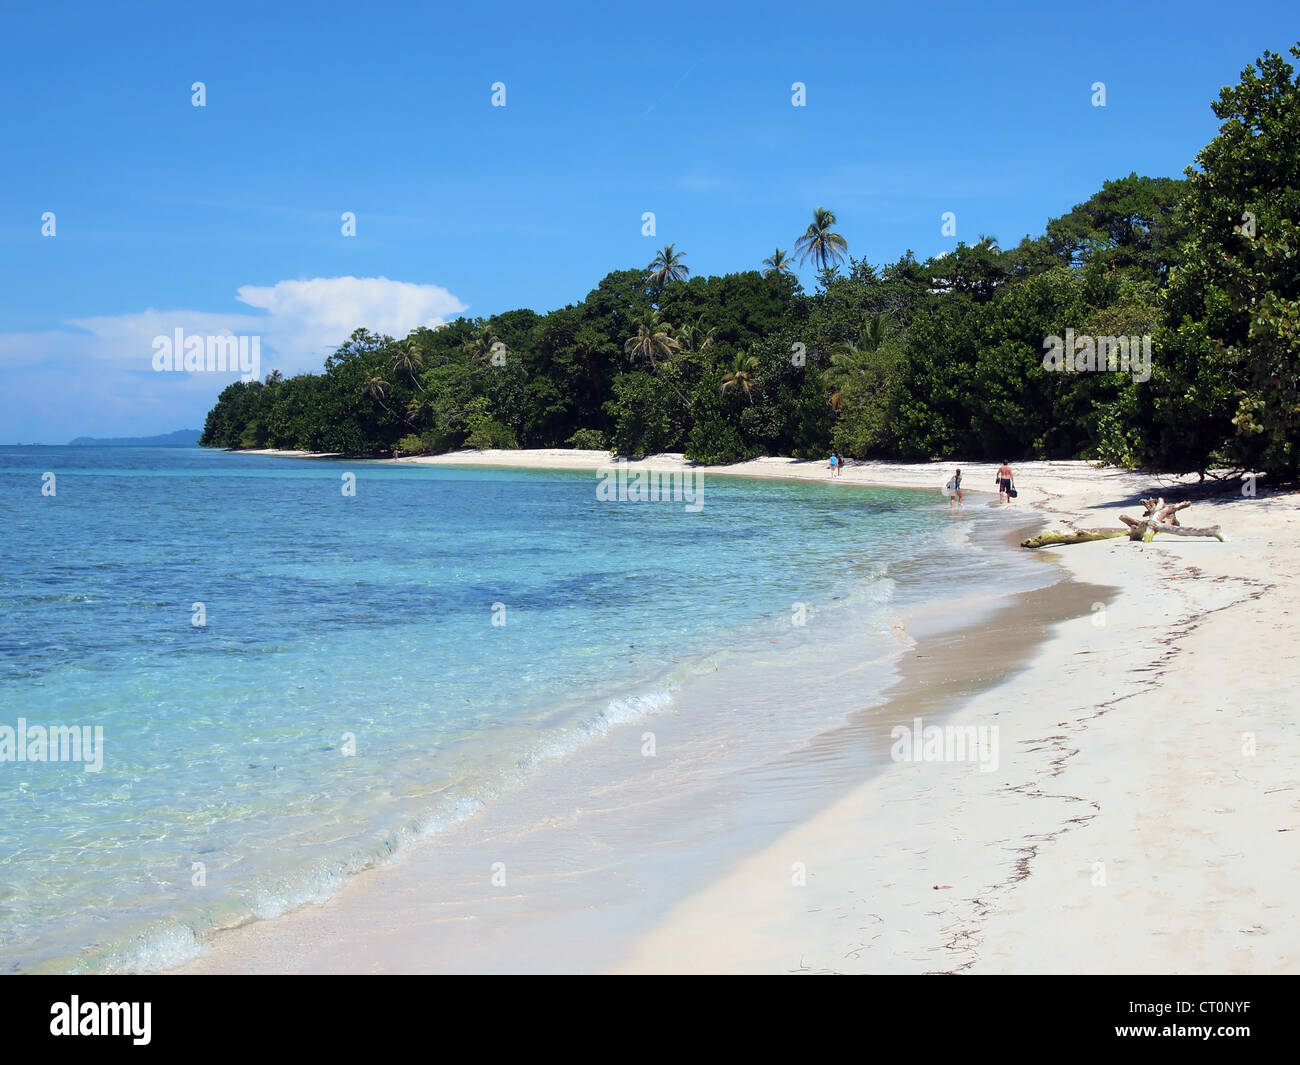 Karibischen Sandstrand mit üppiger Vegetation auf einer tropischen Insel Zapatilla Cayes, Bocas del Toro, Panama Stockfoto